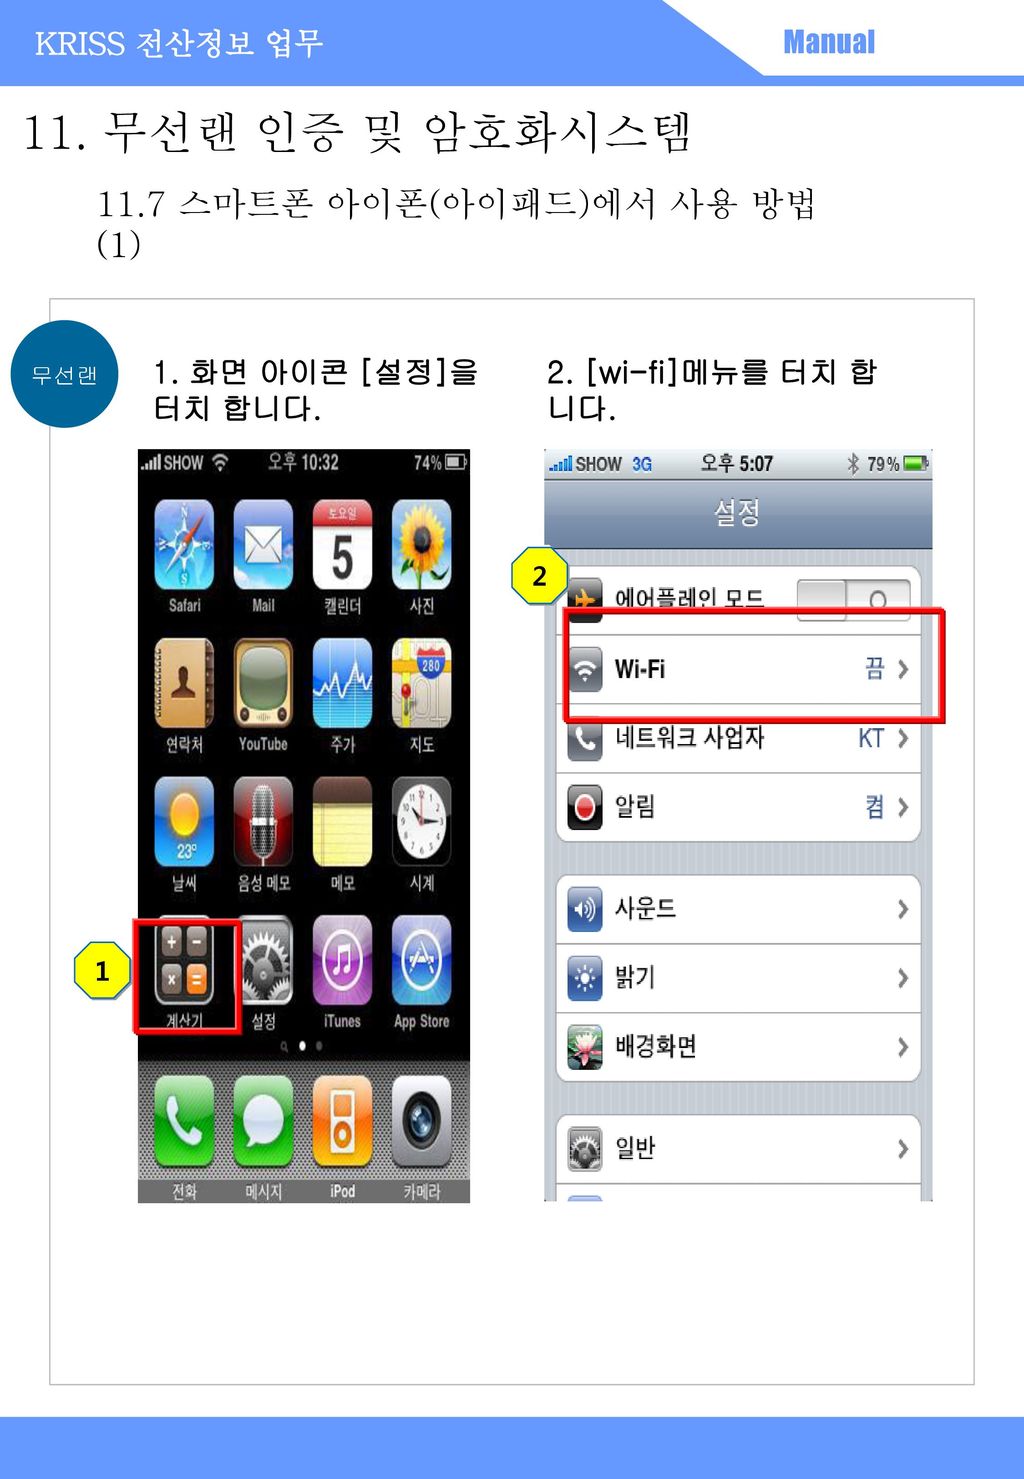 11. 무선랜 인증 및 암호화시스템 11.7 스마트폰 아이폰(아이패드)에서 사용 방법(1)